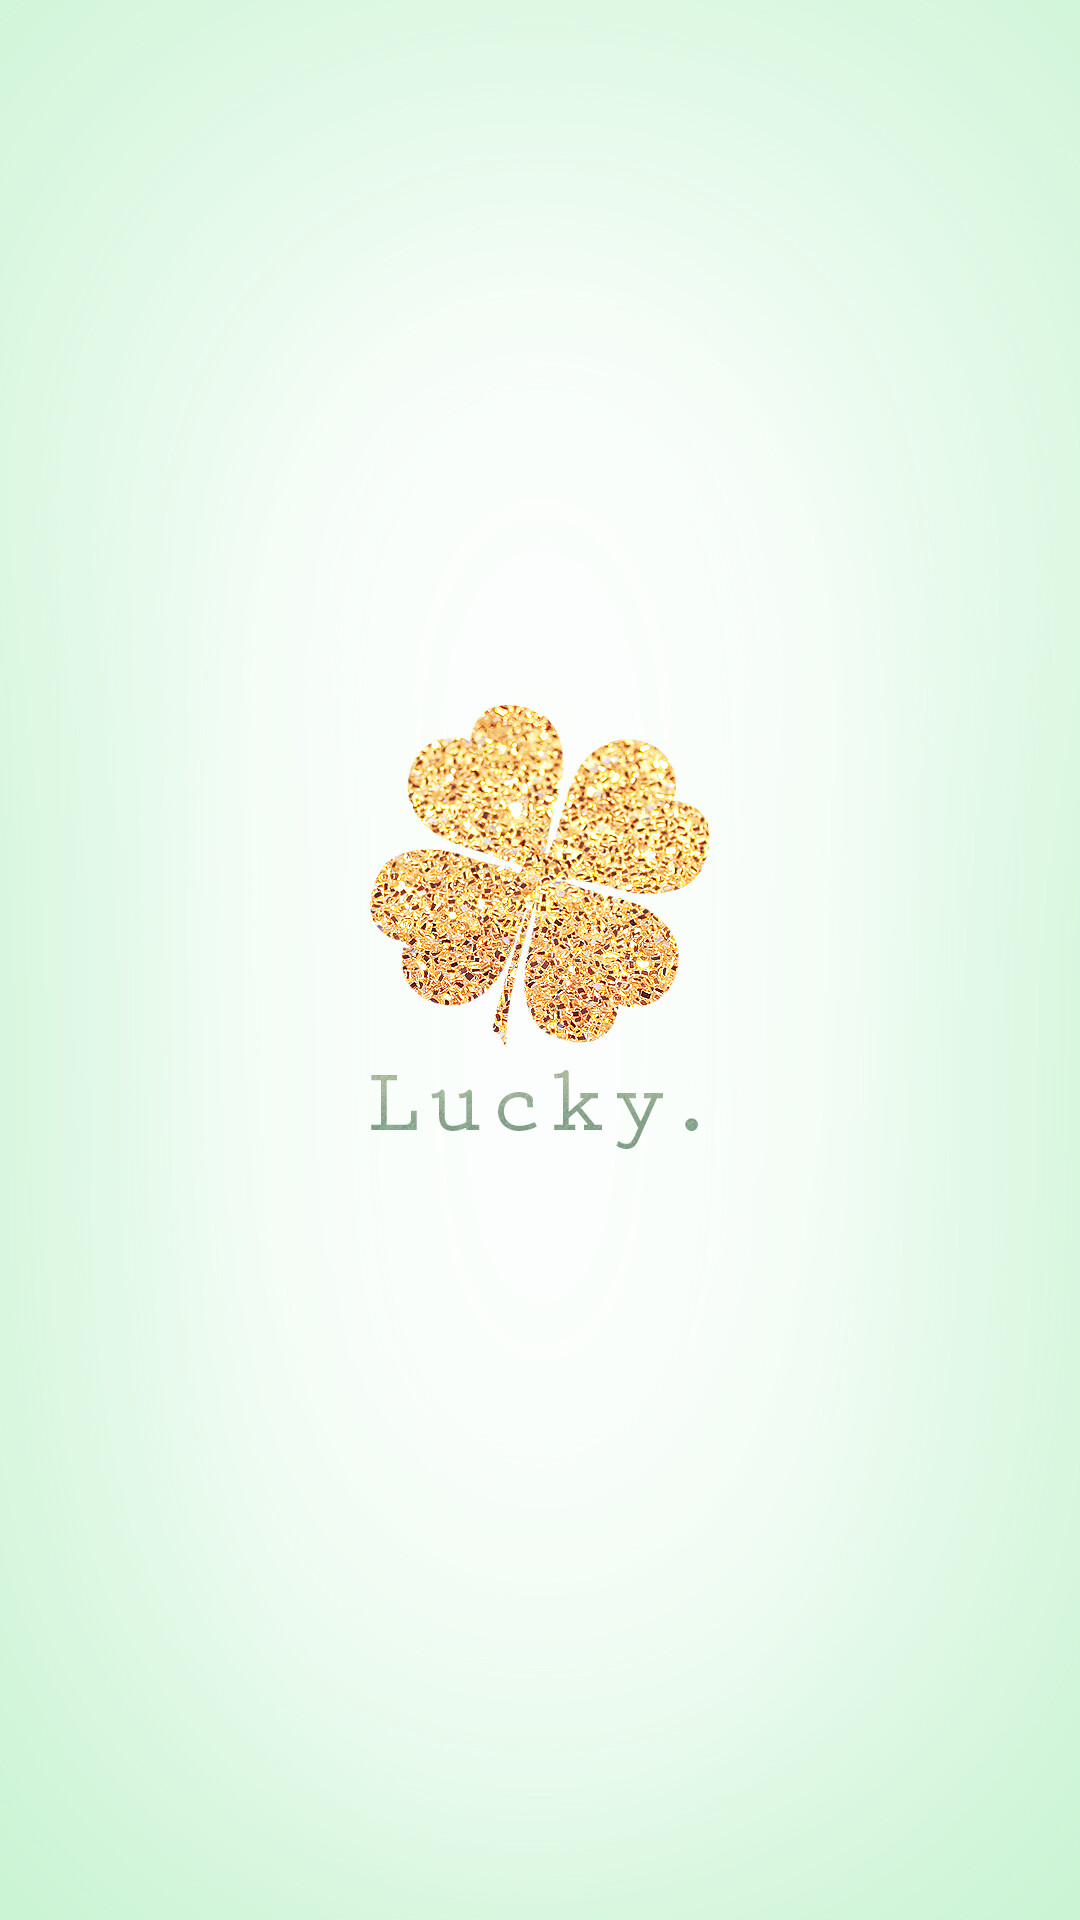 Gold Leaf: Golden shimmer four-leaf clover, The plant bringing good luck. 1080x1920 Full HD Background.